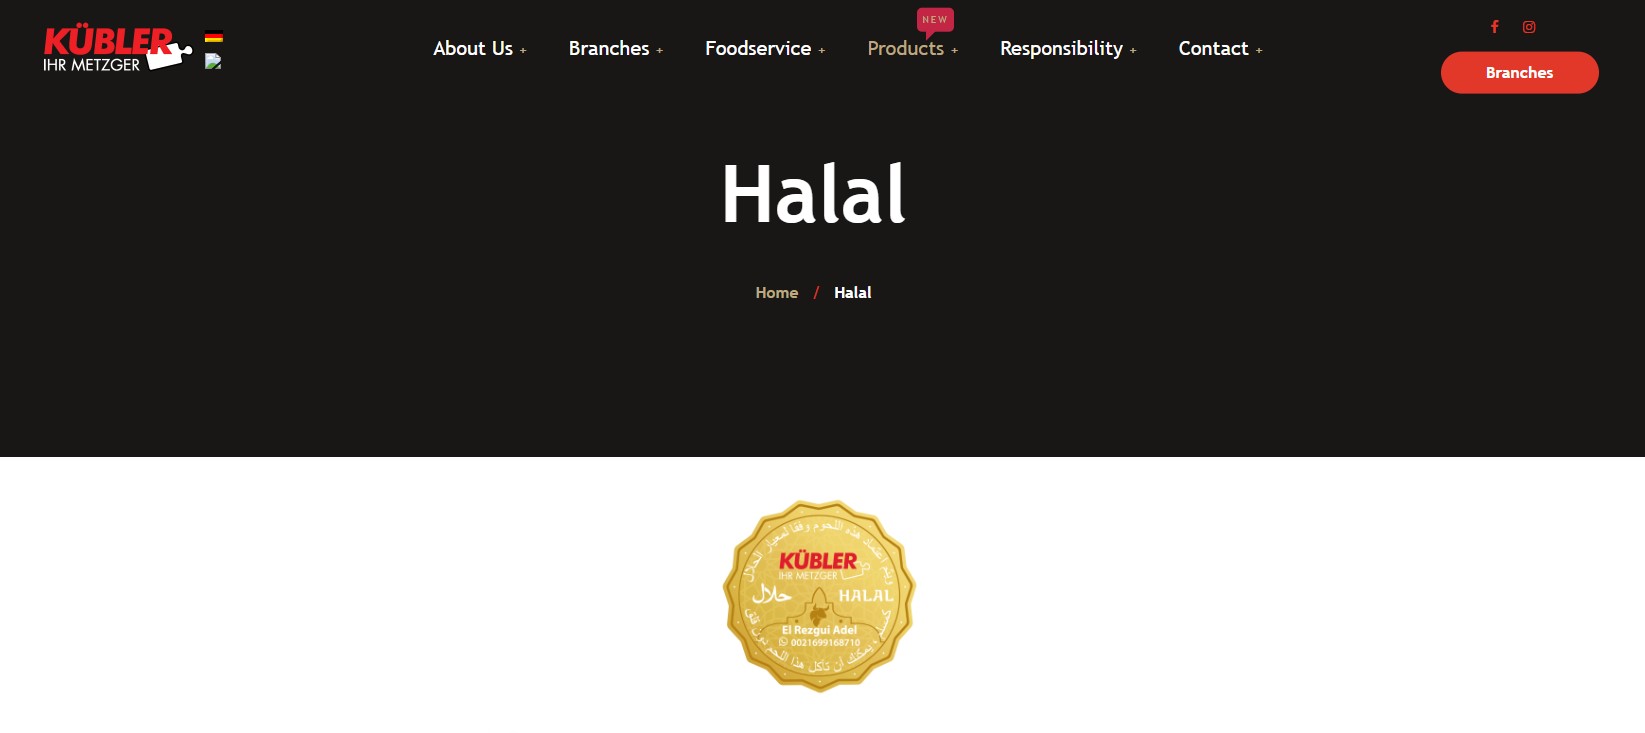 Halal meat kubler in Germany